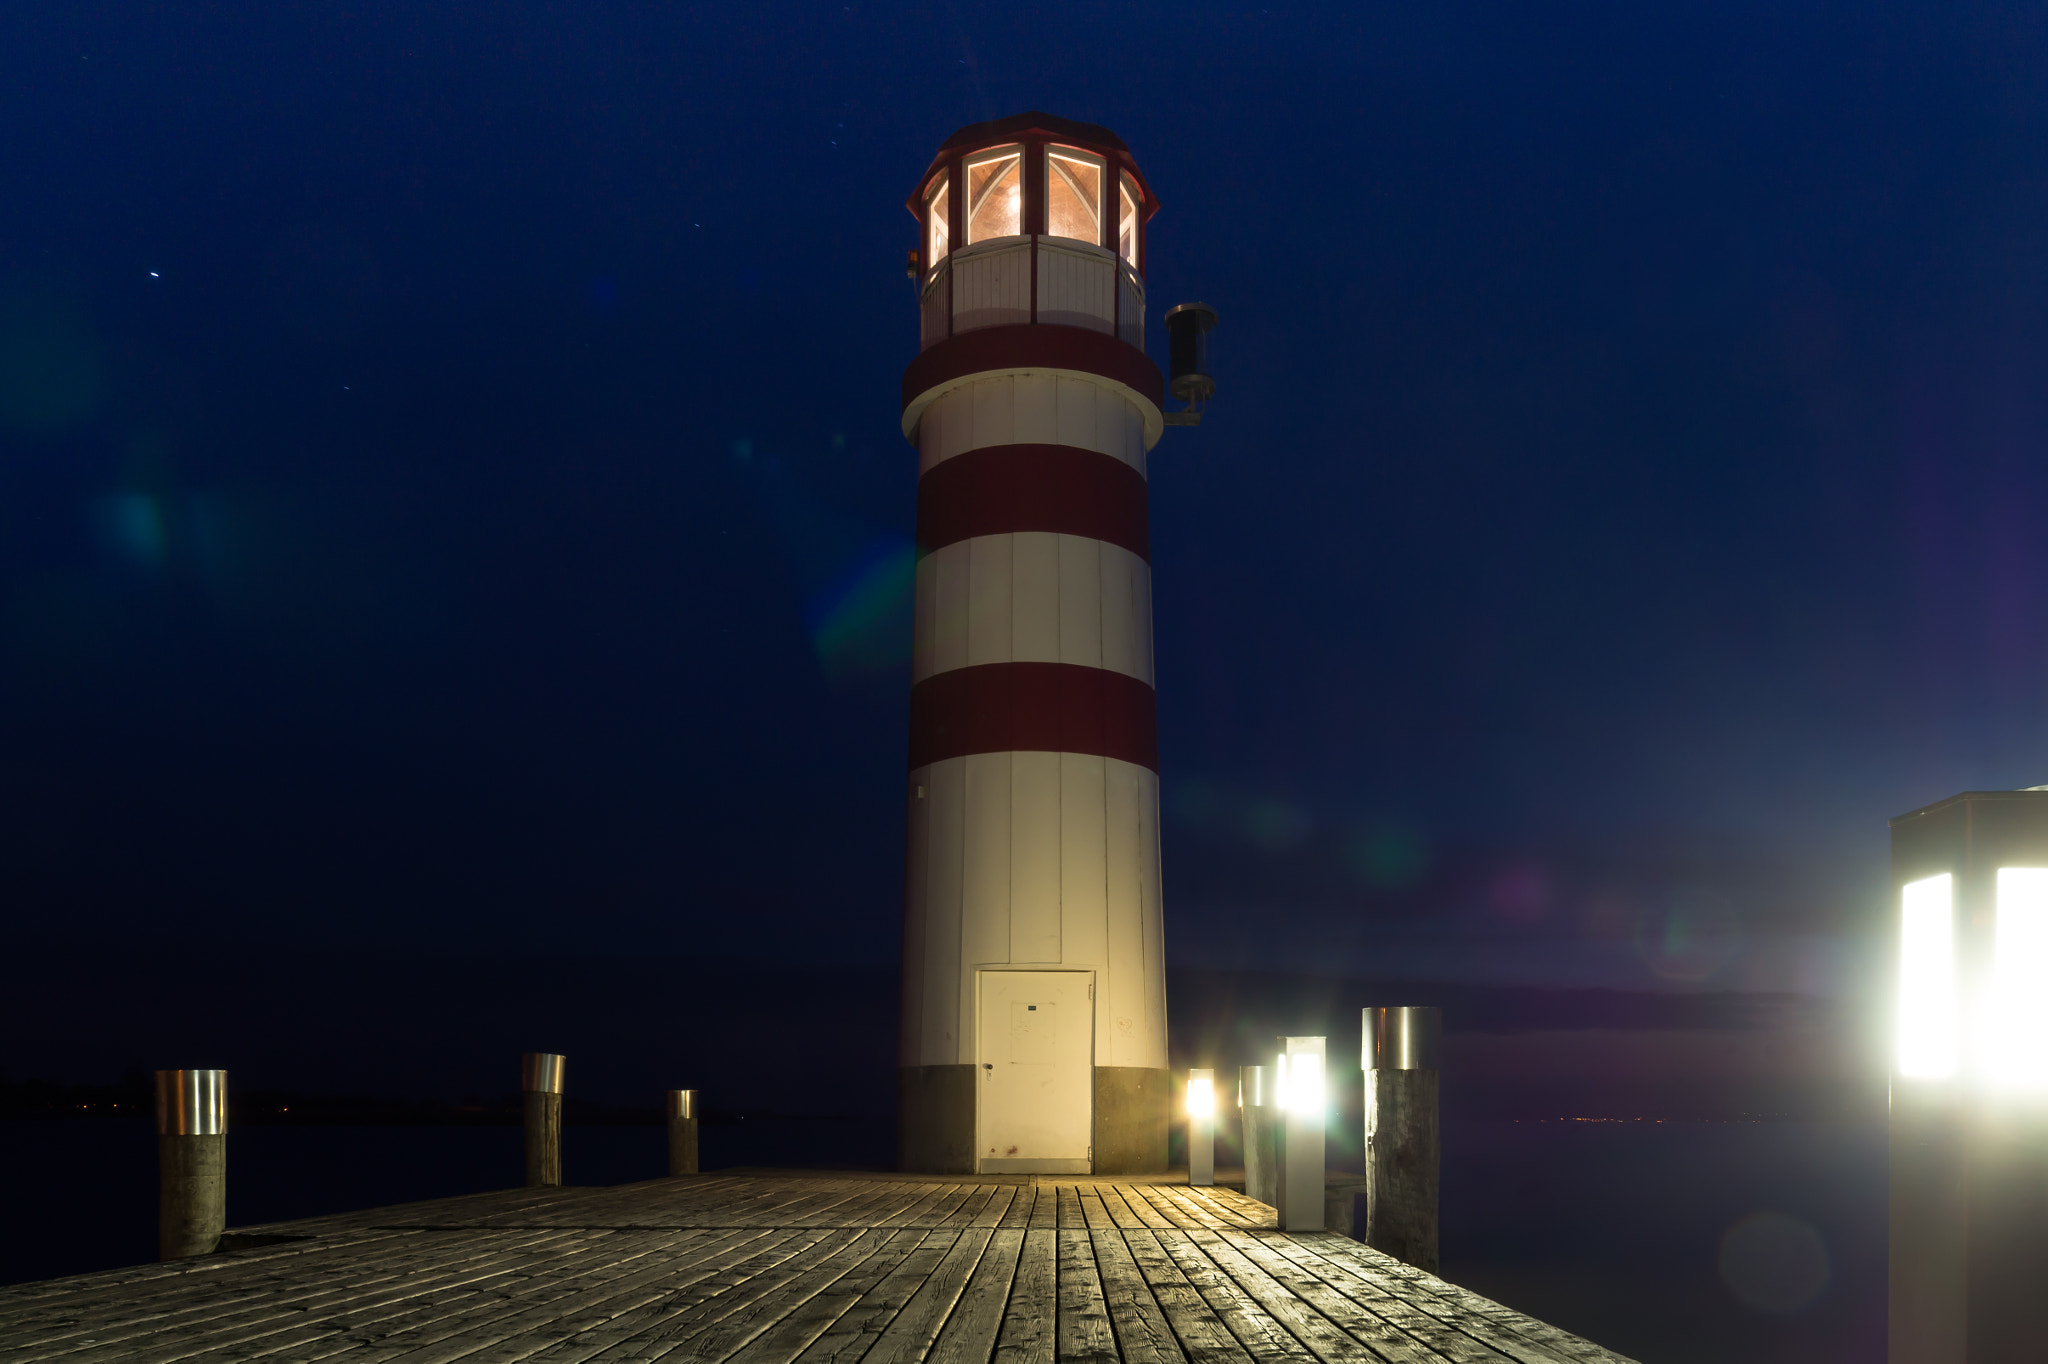 Sony SLT-A58 sample photo. Lighthouse-1.jpg photography